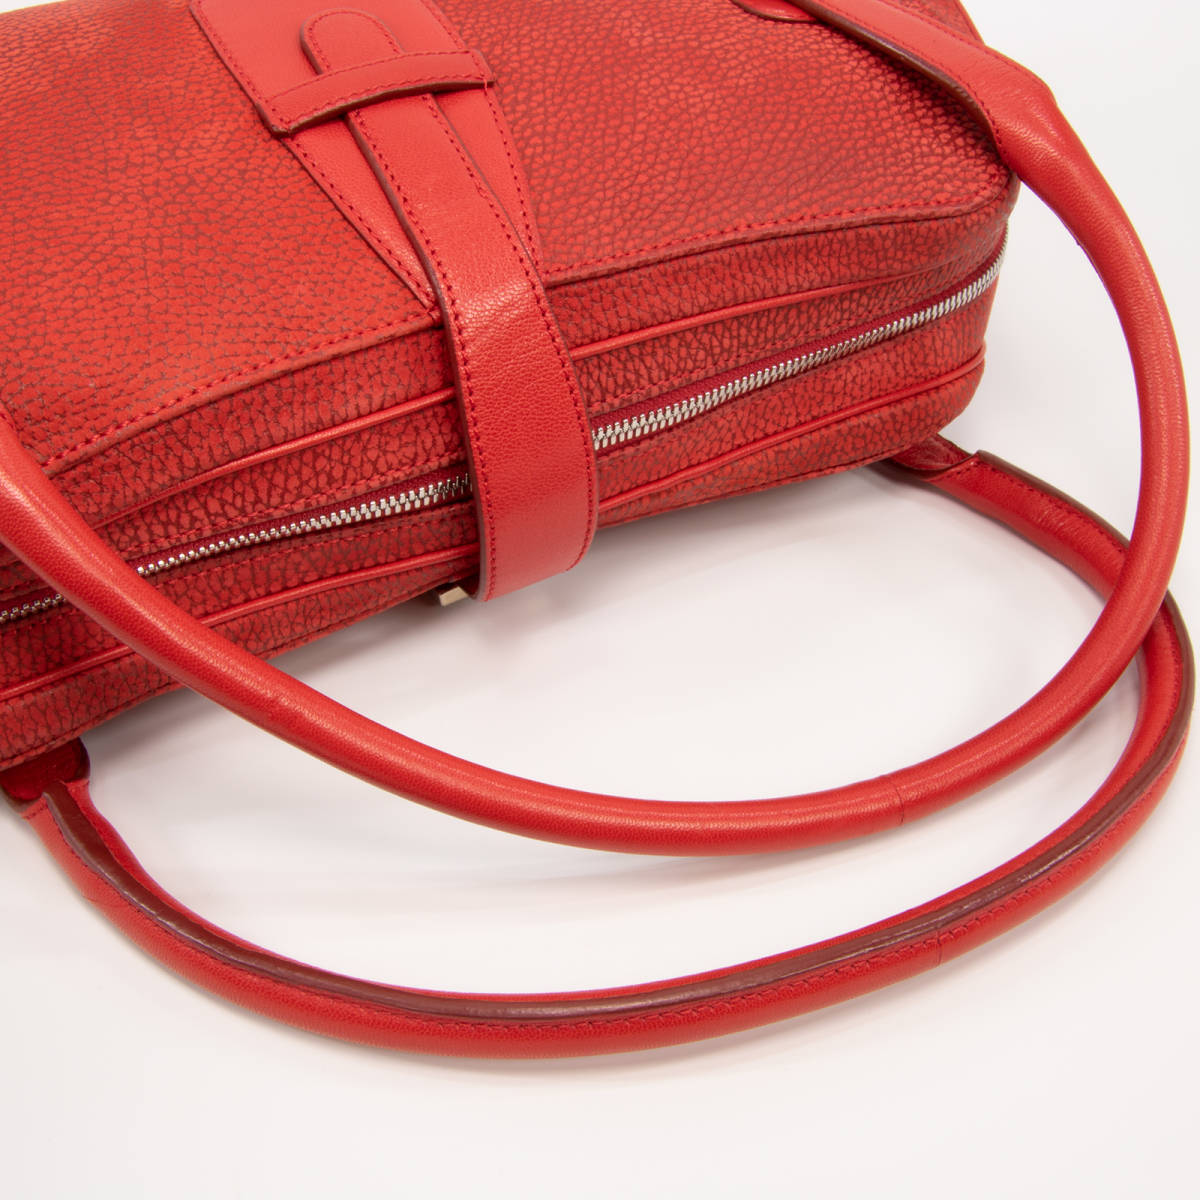 【全額返金保証・送料無料・極美品】ロエベ・ハンドバッグ(センダ・人気・綺麗・ヌバック・レア・珍しい・赤・レッド・鞄・バック・E284)